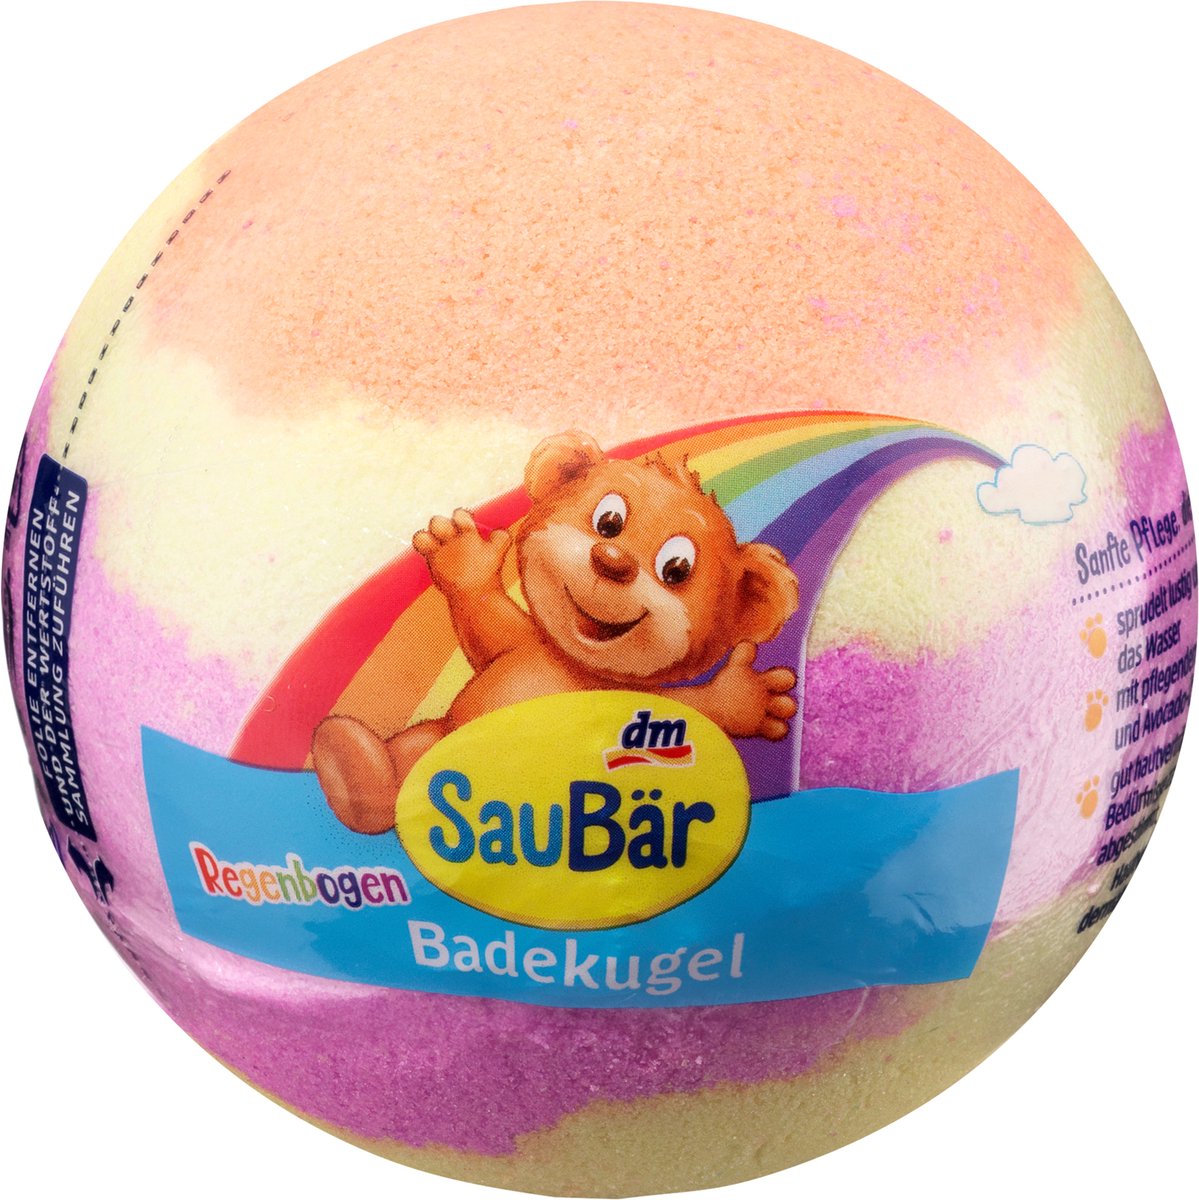 SauBär badbruisbal regenboog, 165 g